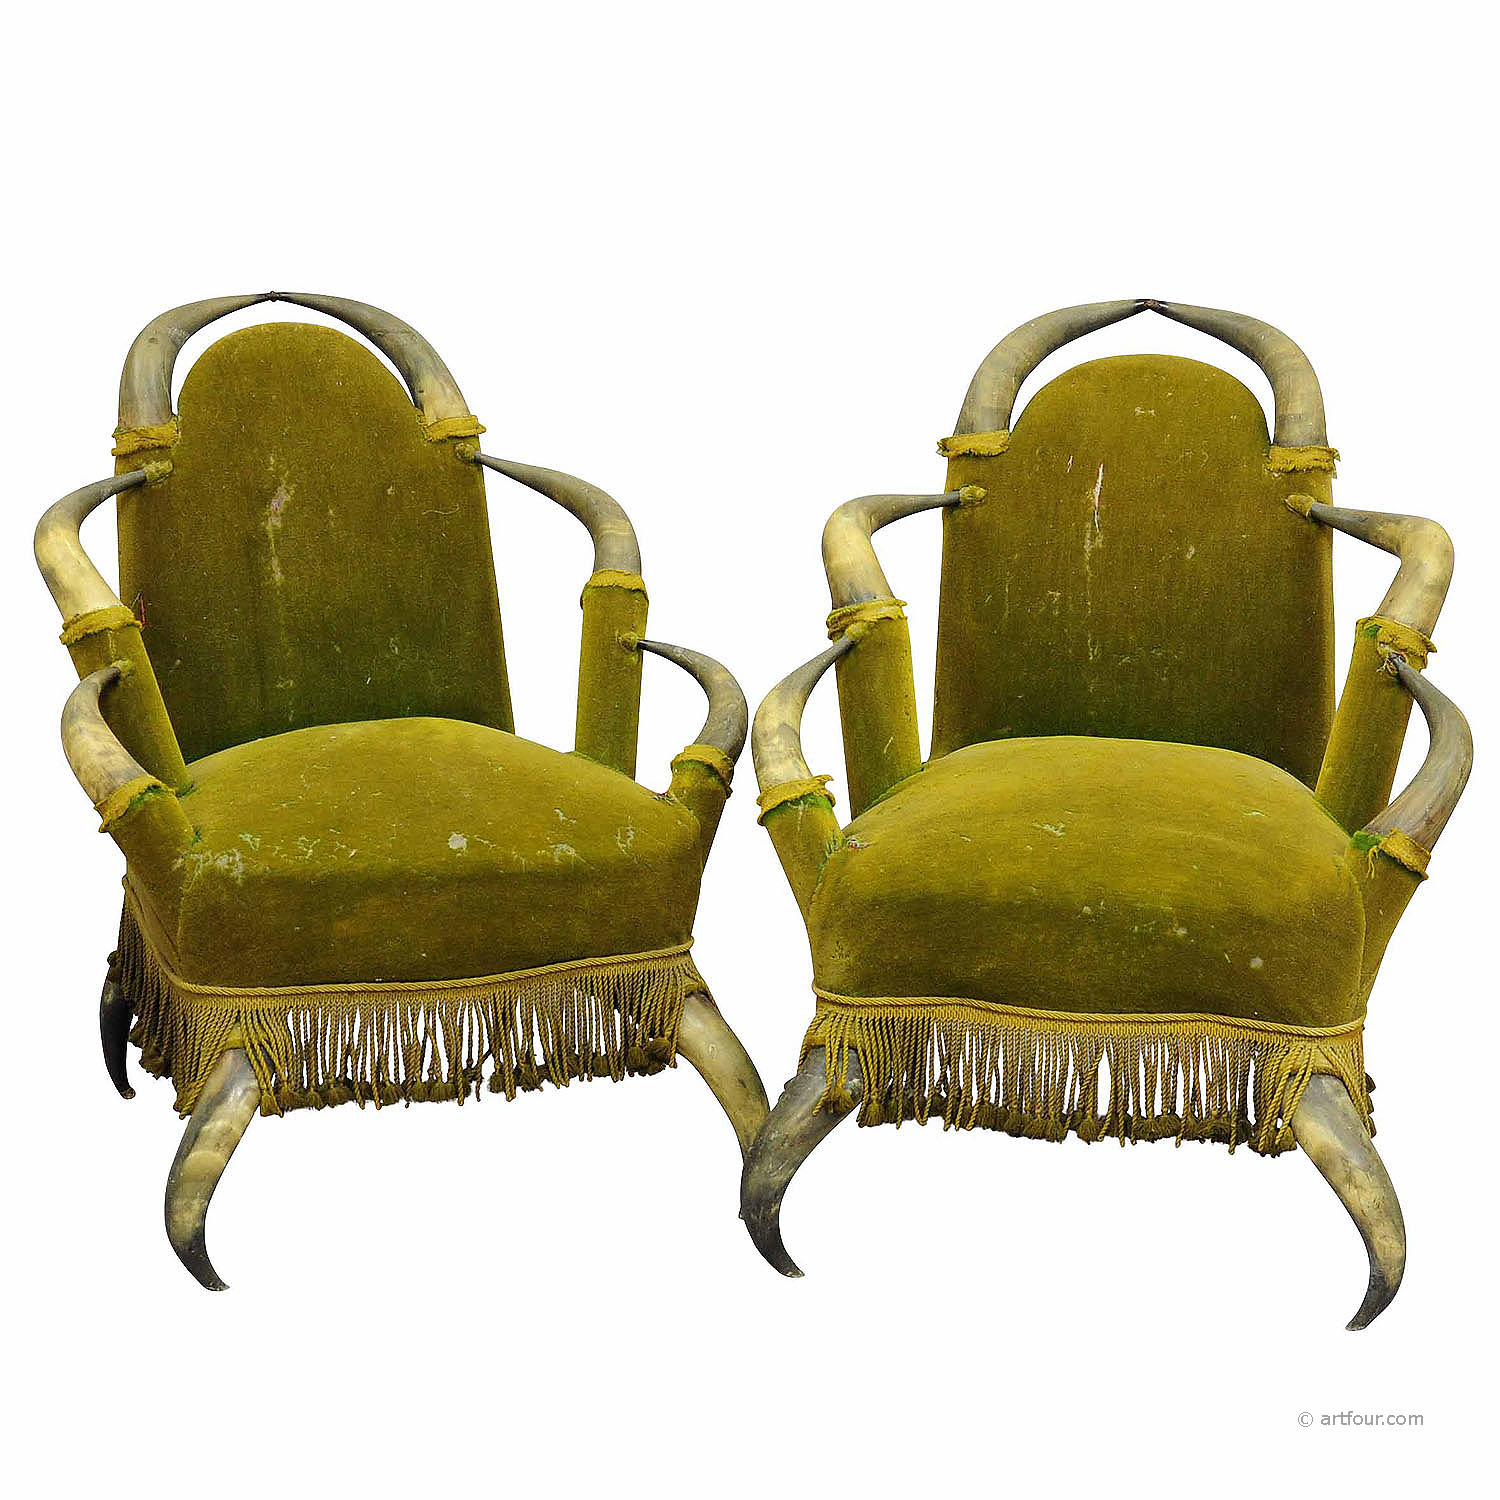 Pair of Antique Bull Horn Chairs Austria 1870